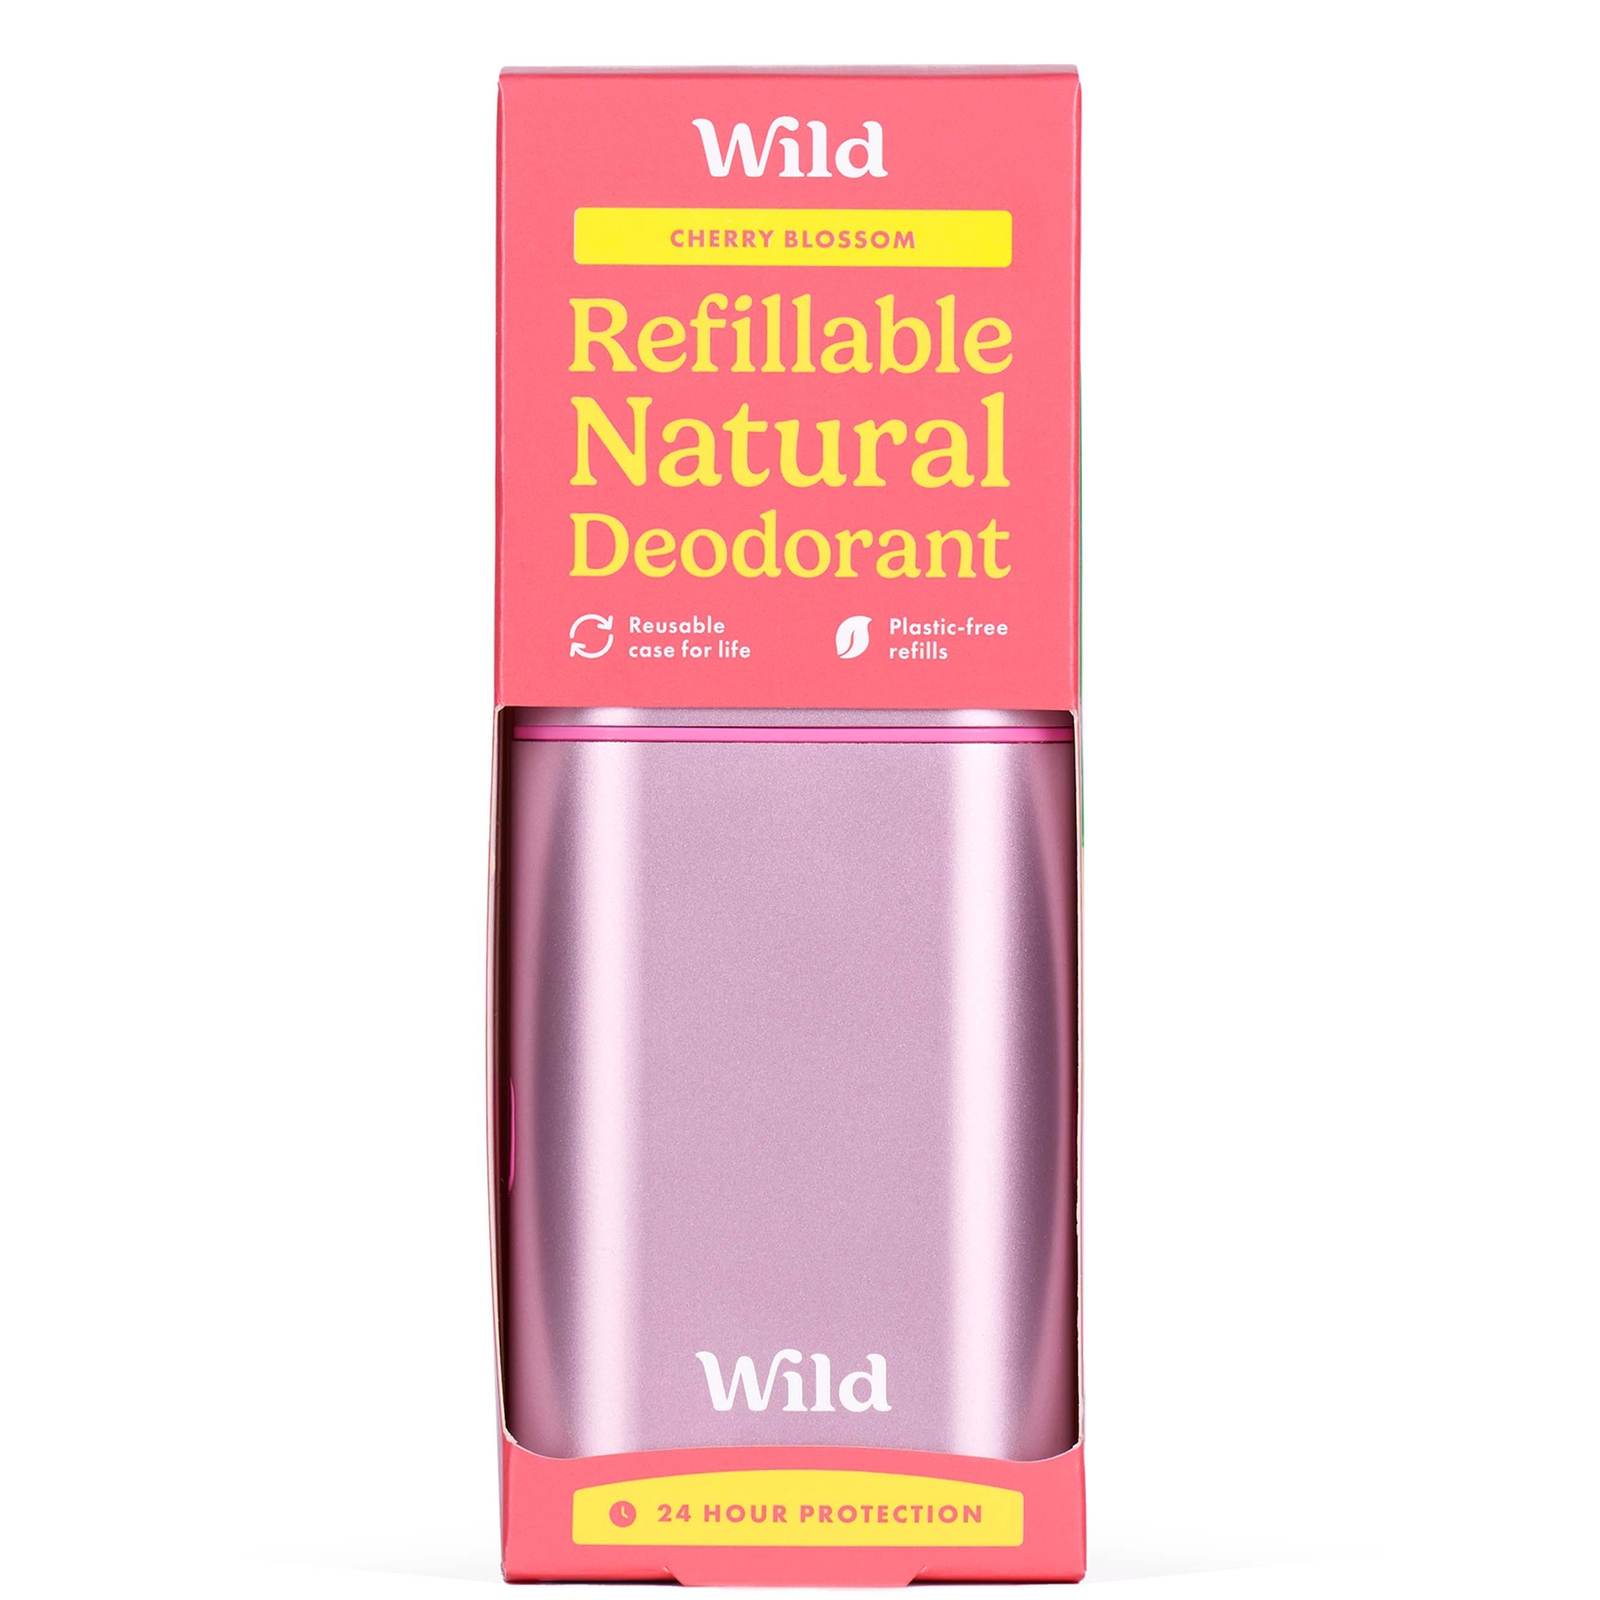 Wild Cherry Blossom Deodorant in Pink Case 40g von Wild